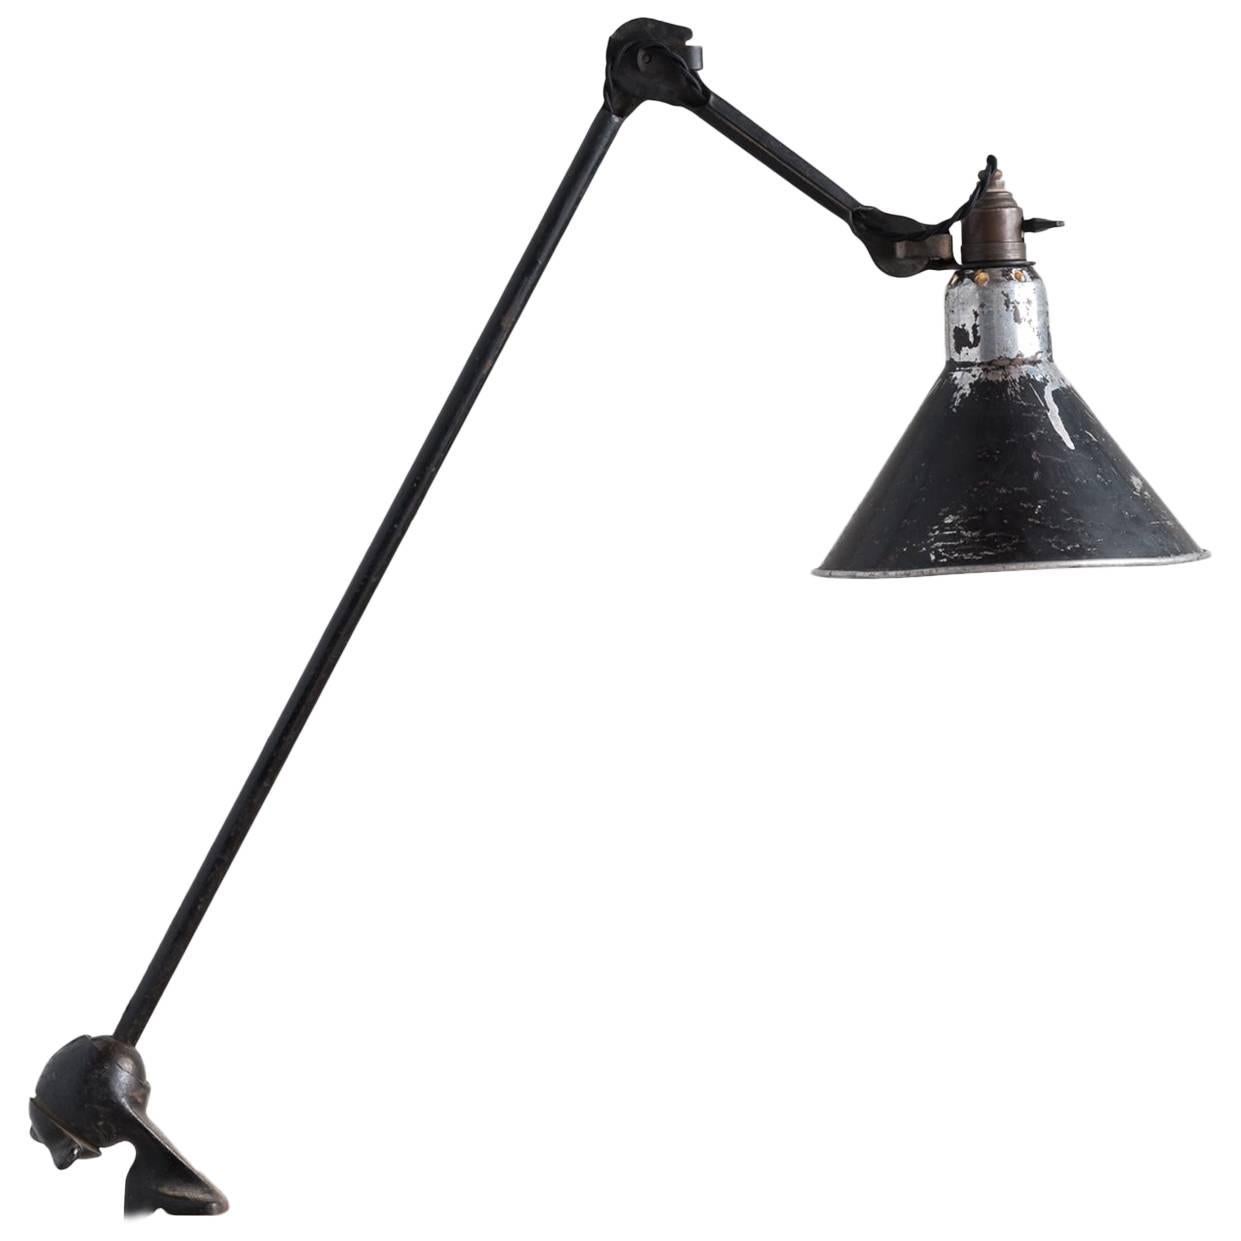 Gras Lamp No. 201, circa 1930